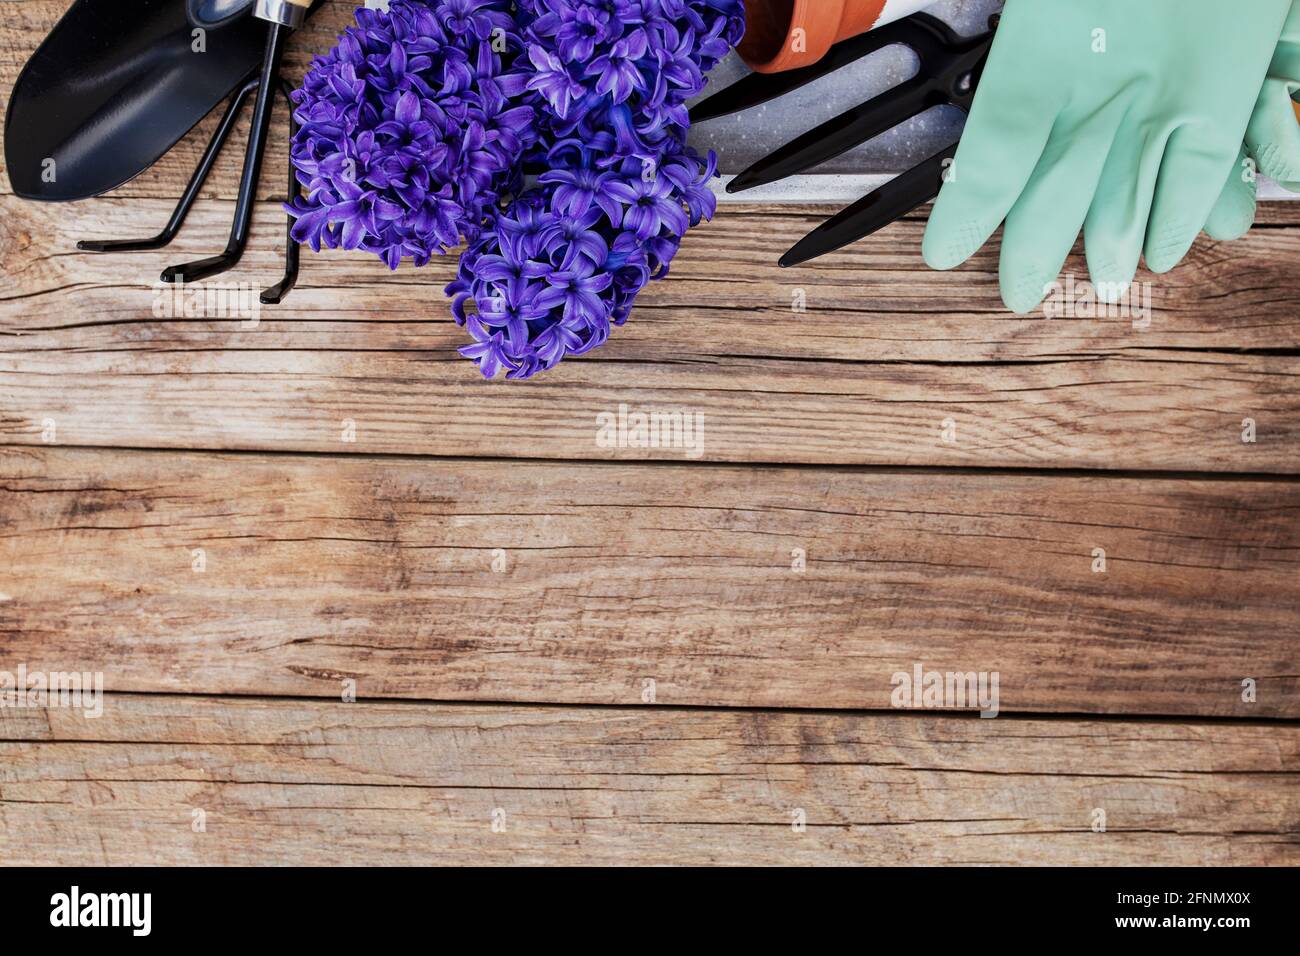 Gartenbauhobby-Konzept. Hyazintblüte, kleine Gartengabel oder Rechen und Schaufel, Handschuhe, Keramiktopf auf Holzhintergrund Stockfoto